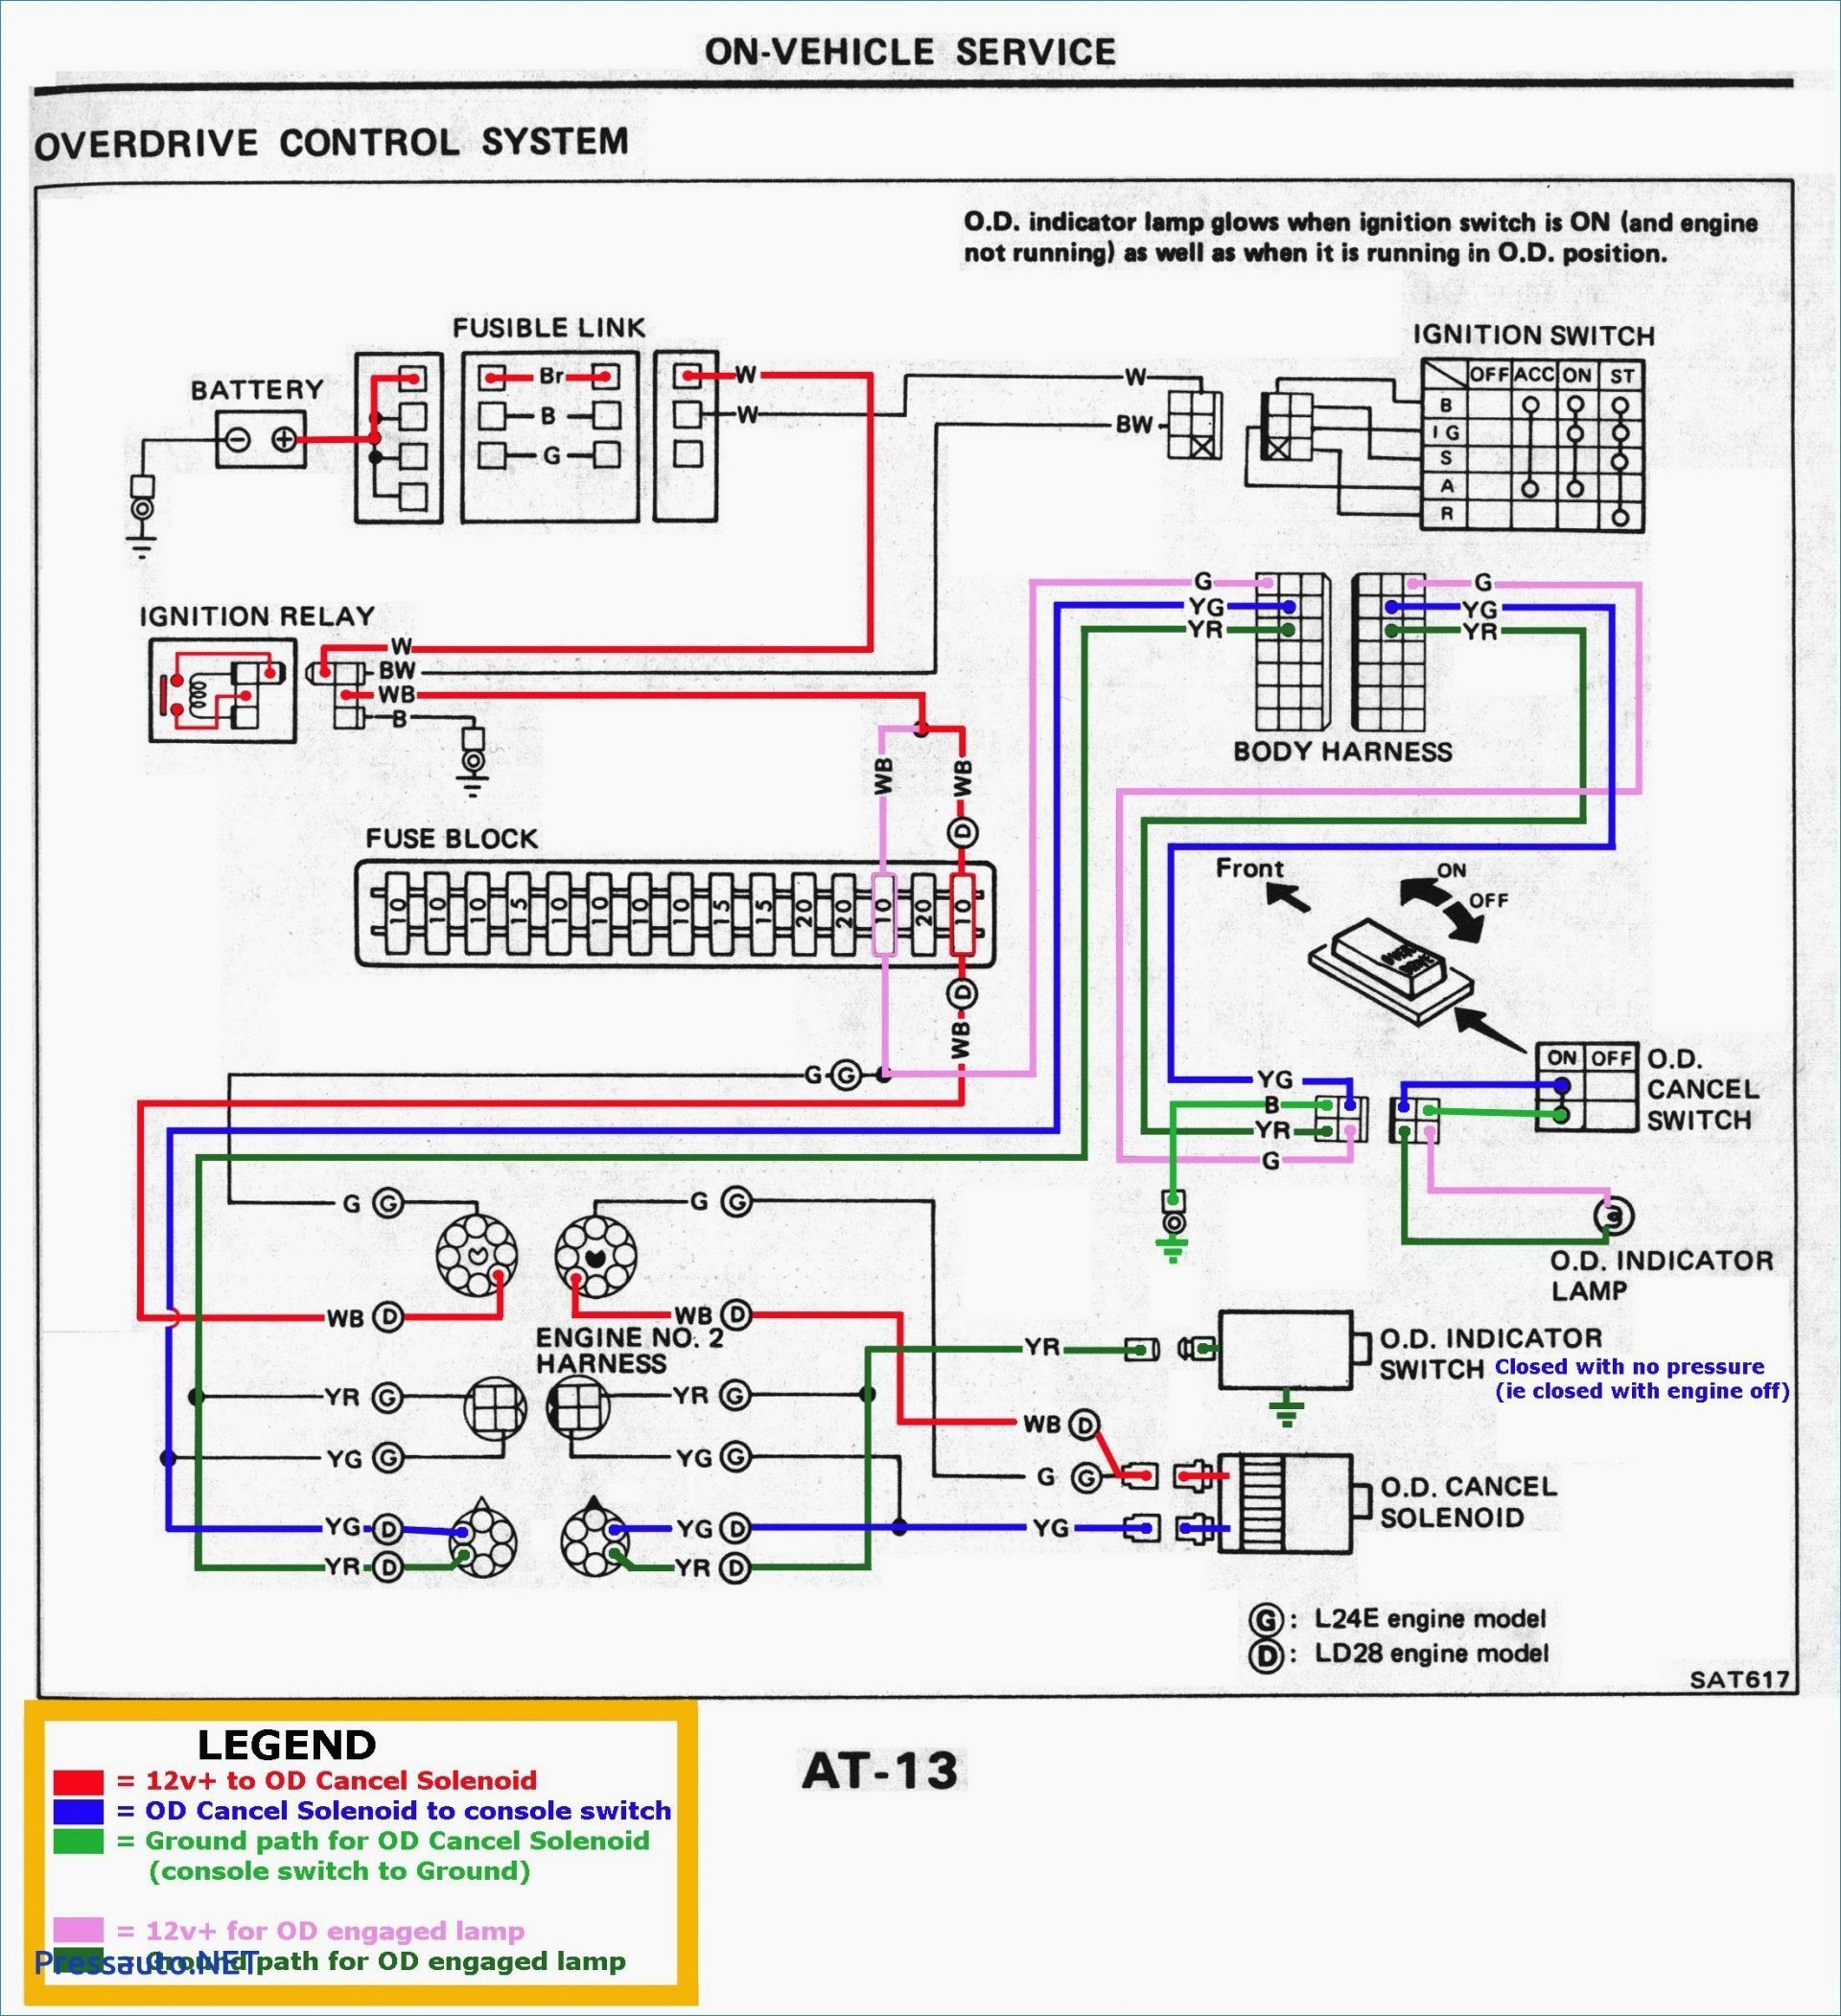 1991 toyota Pickup Tail Light Wiring Diagram 1988 toyota Pickup Engine Diagram Of 1991 toyota Pickup Tail Light Wiring Diagram